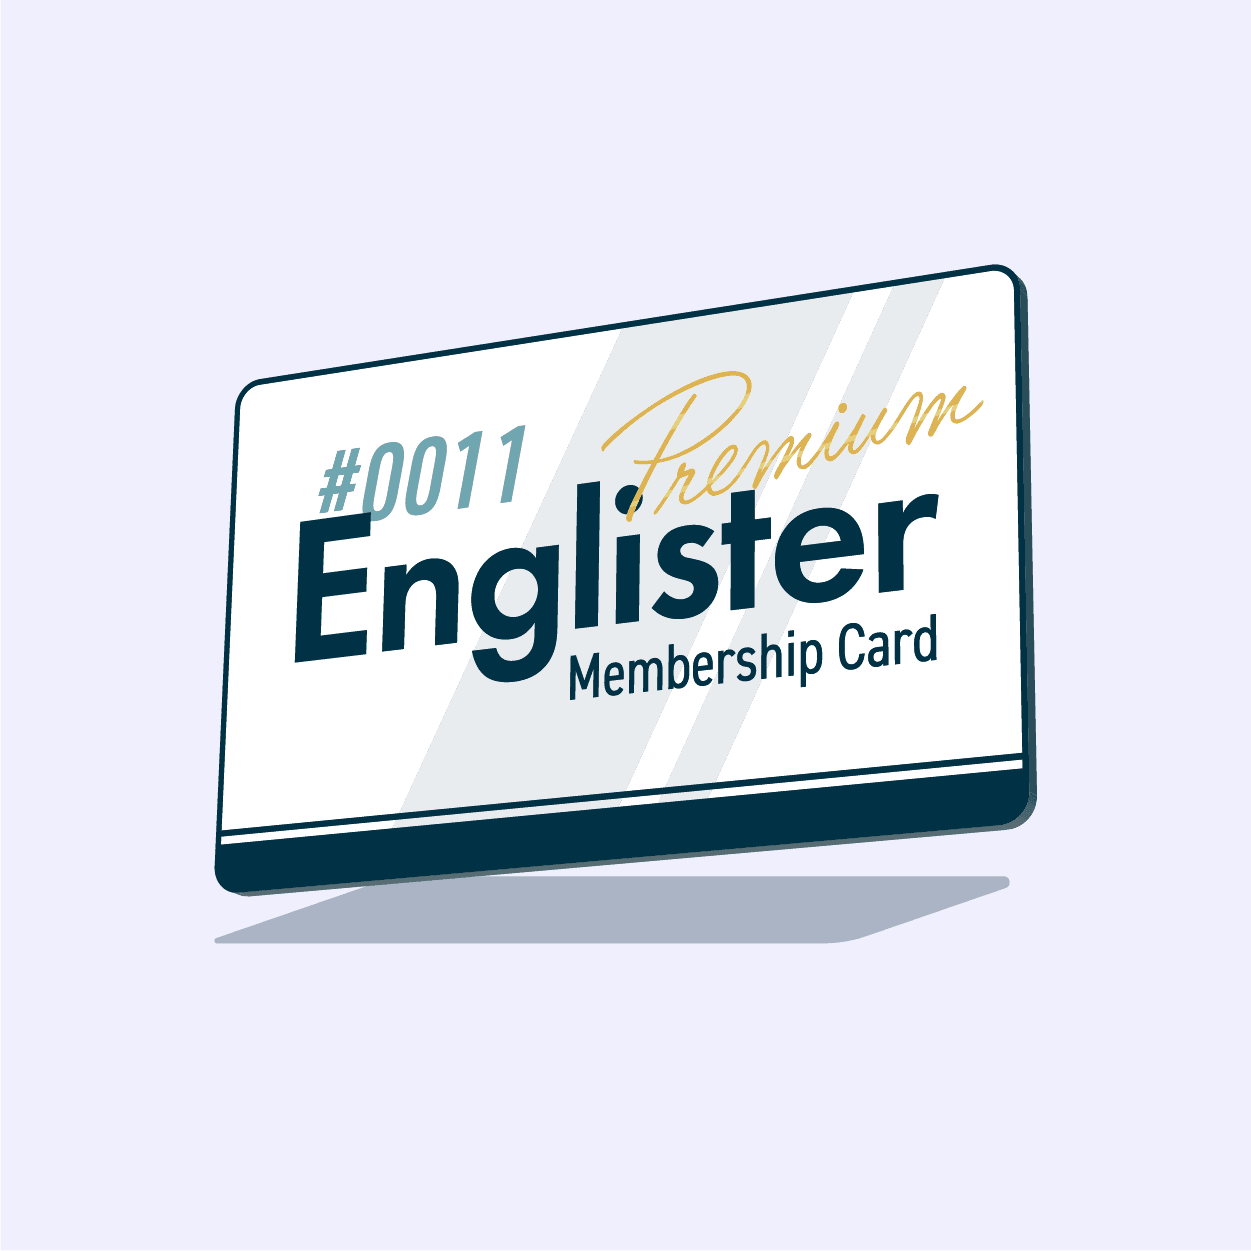 Englister Premium Membership #0011